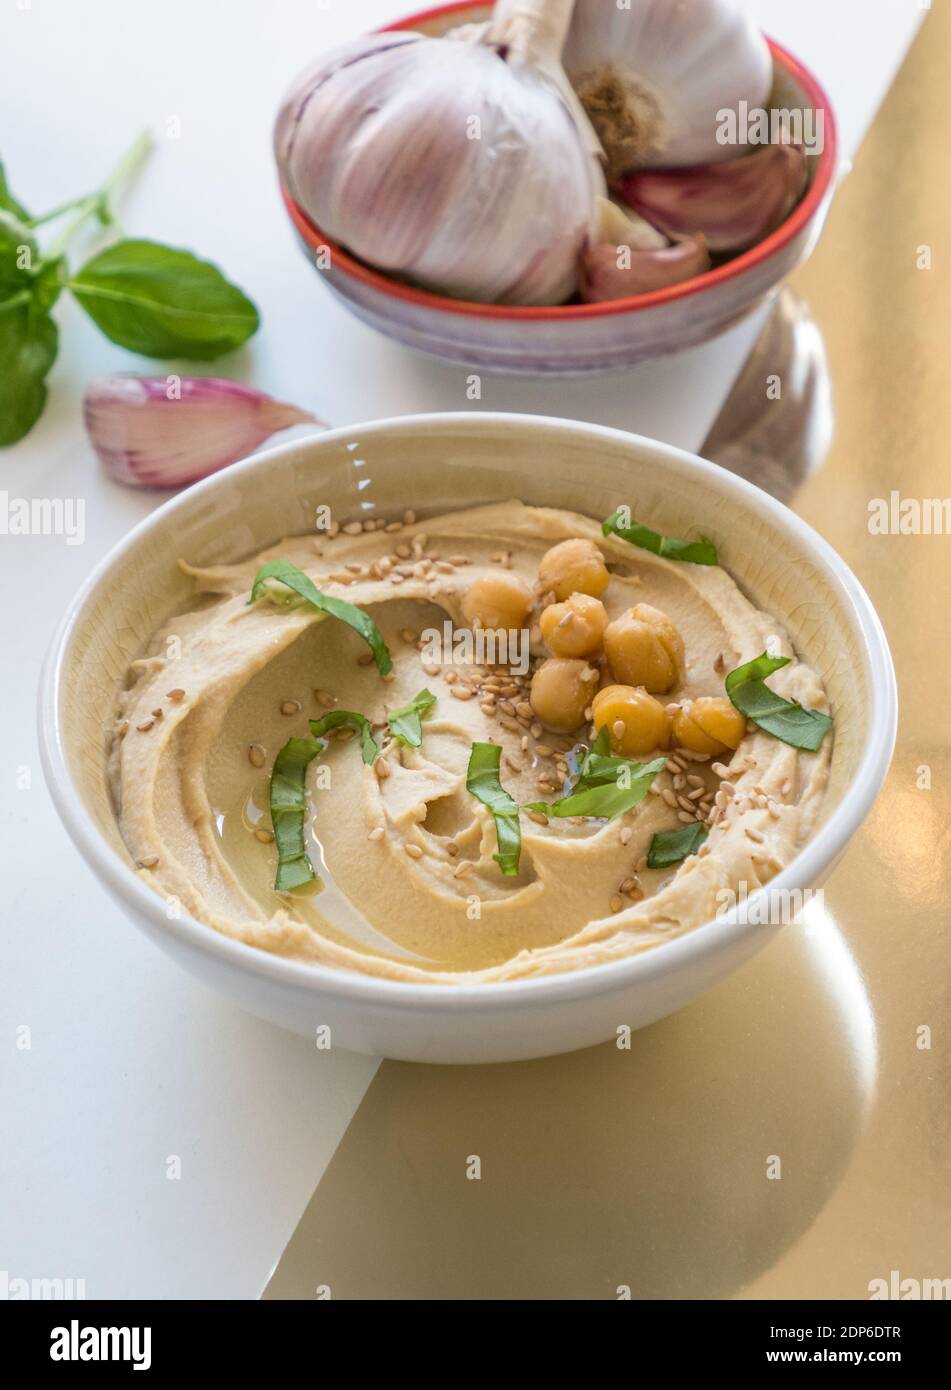 Schüssel mit frisch zubereitetem, cremigem Hummus mit Kichererbsen, Basilikum und Knoblauch isoliert auf buntem Hintergrund Stockfoto